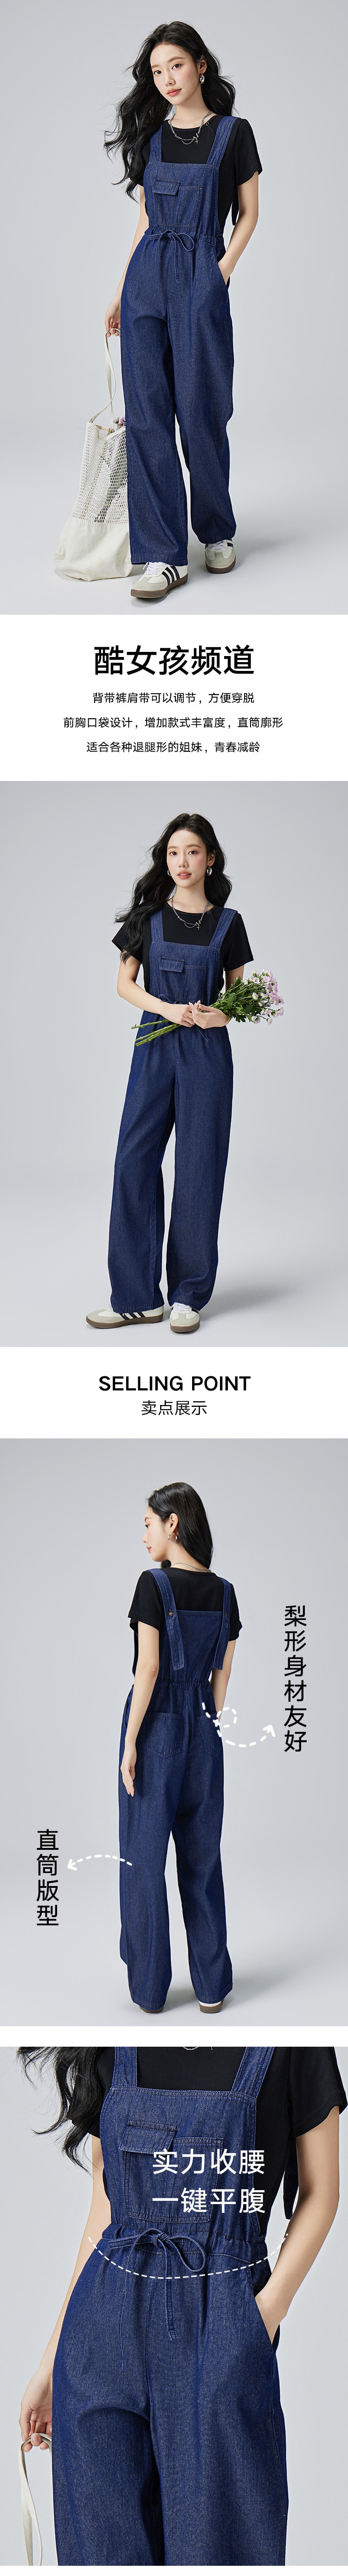 【中国直邮】HSPM 新款复古原色宽松休闲工装直筒裤子 深蓝色 S